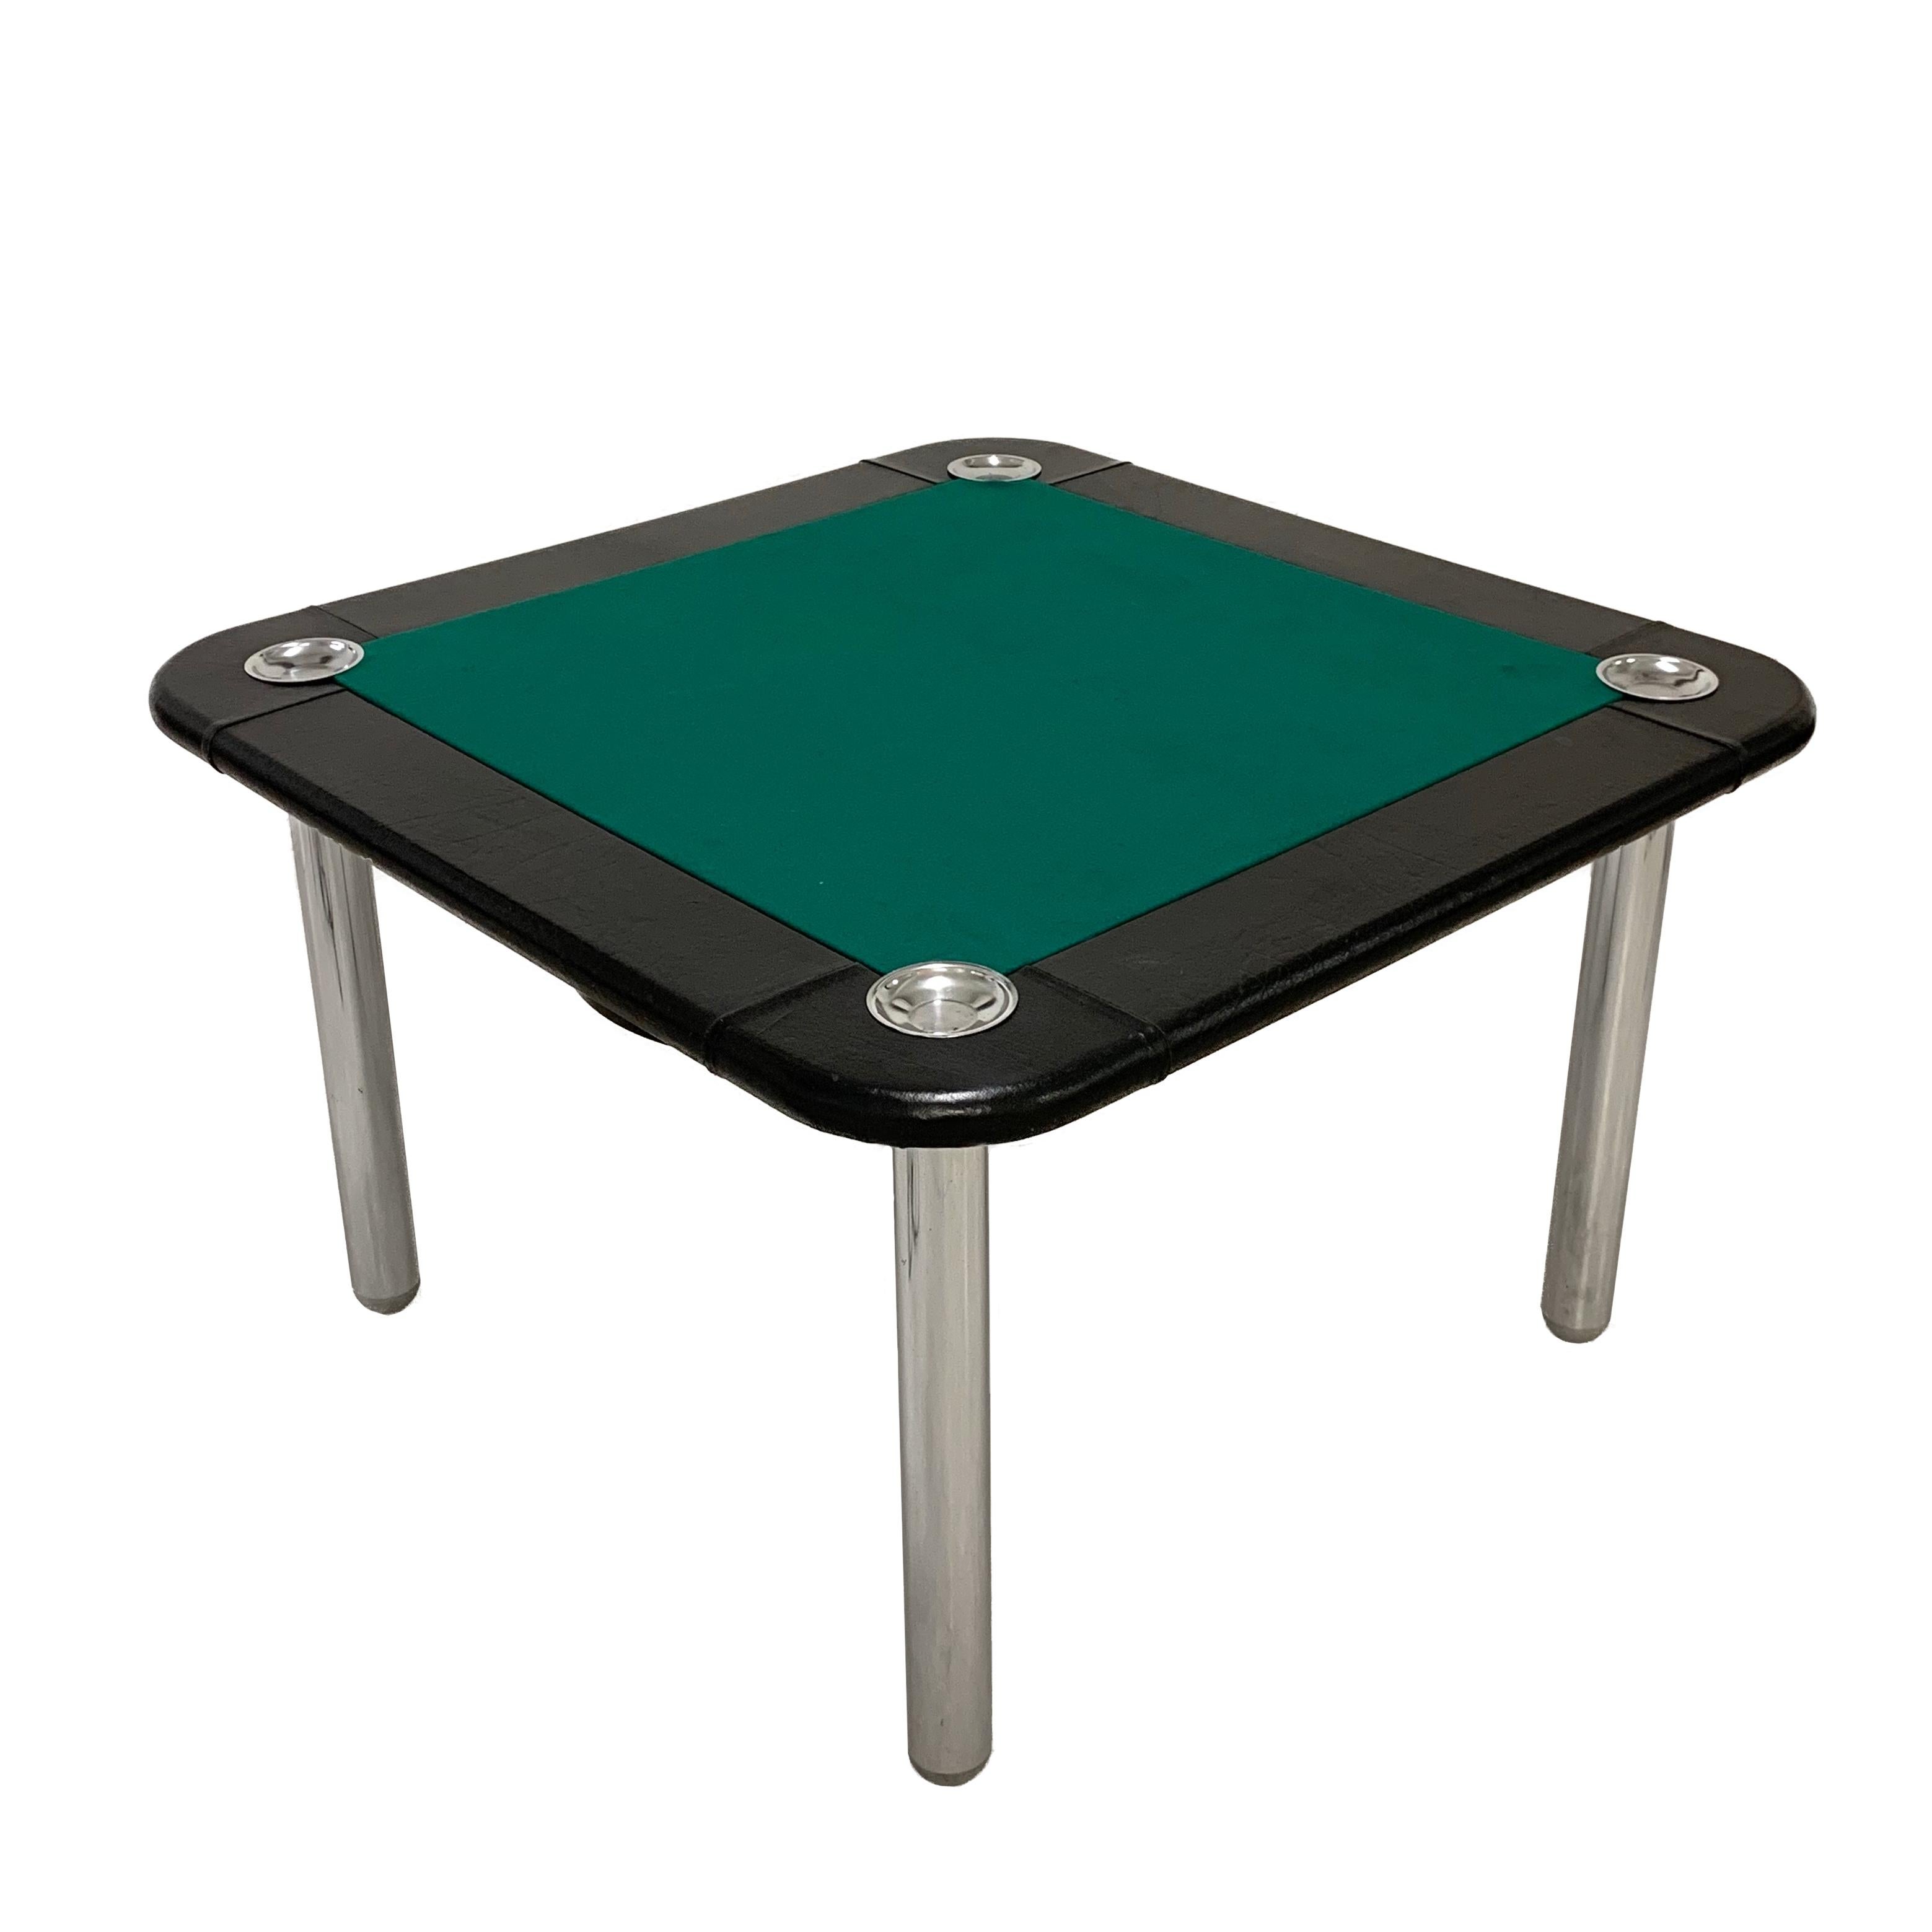 Großer Spieltisch aus Leder und verchromtem Stahl aus der Mitte des Jahrhunderts. Dieser Kartentisch wurde in den 1960er Jahren in Italien hergestellt und wird Zanotta zugeschrieben.

Die Platte ist aus neuem grünem Stoff, mit schwarzen